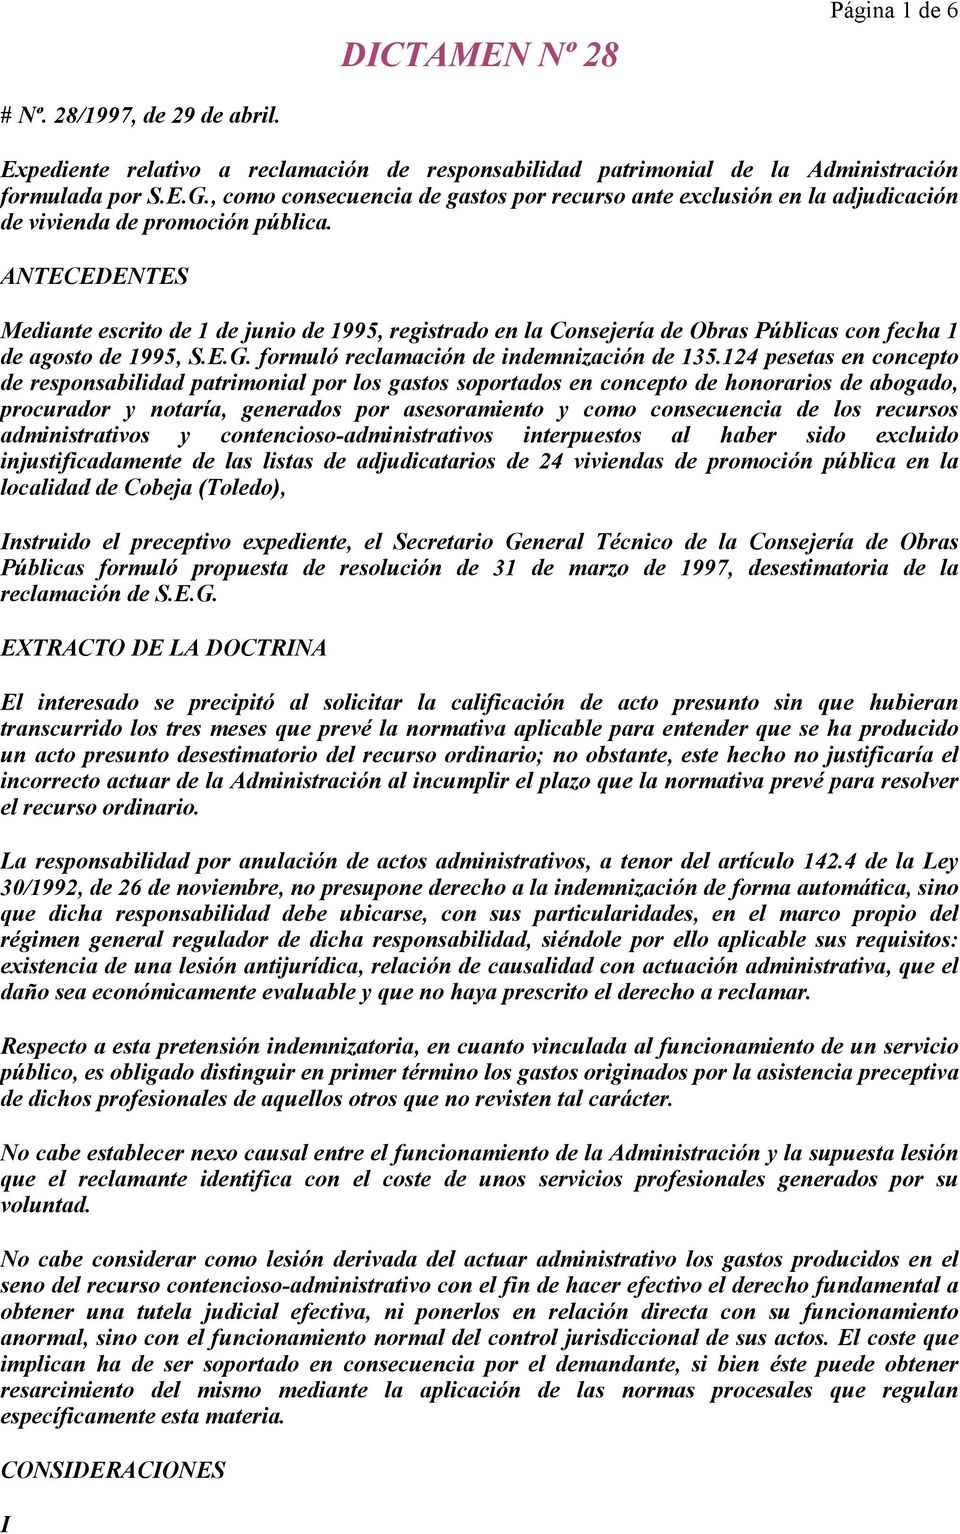 ANTECEDENTES Mediante escrito de 1 de junio de 1995, registrado en la Consejería de Obras Públicas con fecha 1 de agosto de 1995, S.E.G. formuló reclamación de indemnización de 135.